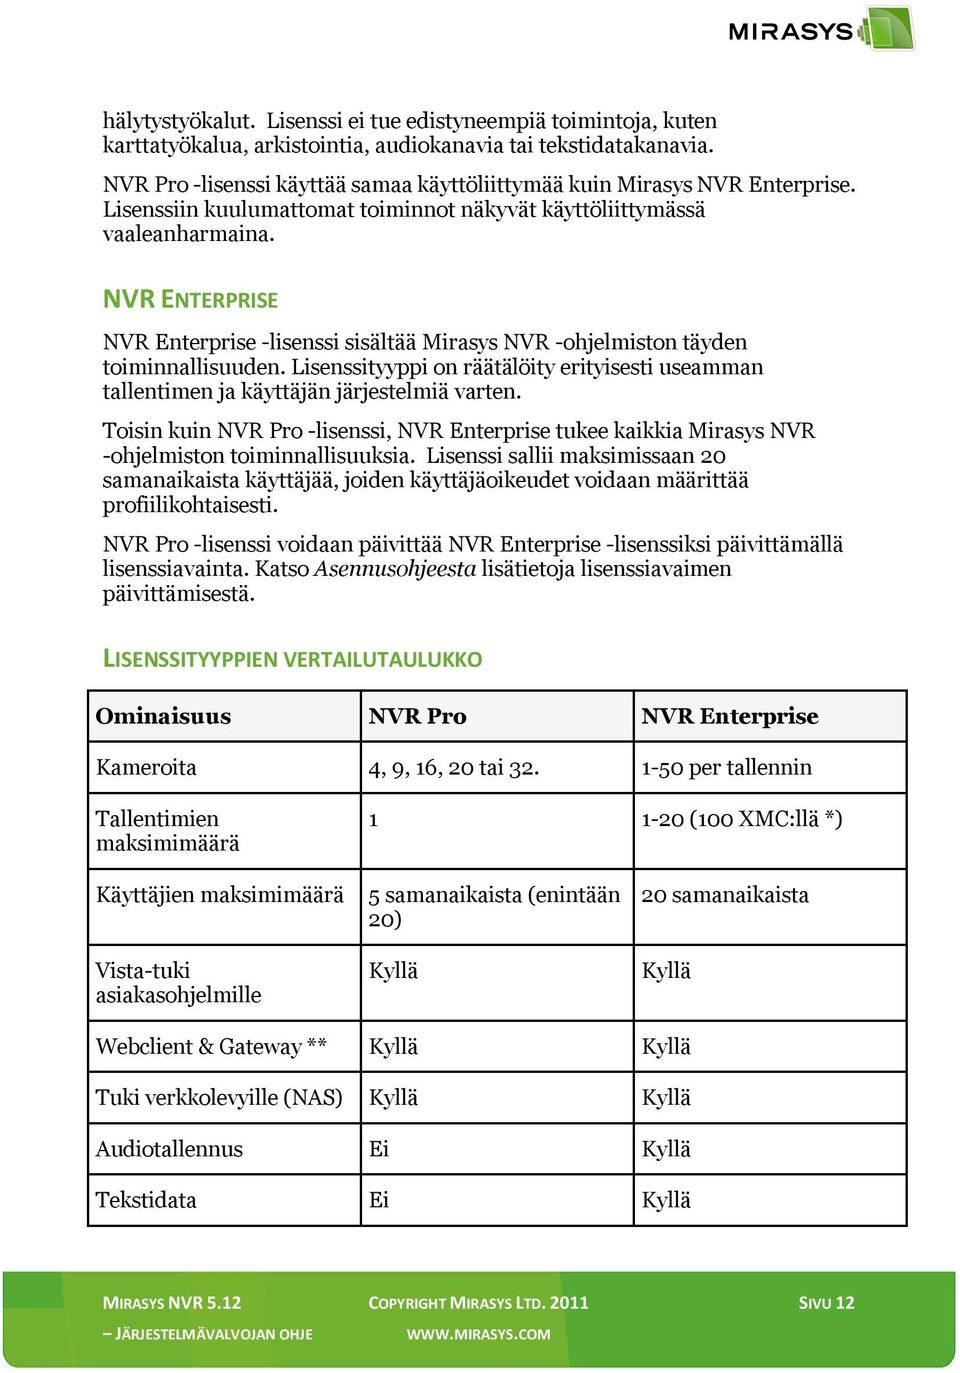 NVR ENTERPRISE NVR Enterprise -lisenssi sisältää Mirasys NVR -ohjelmiston täyden toiminnallisuuden. Lisenssityyppi on räätälöity erityisesti useamman tallentimen ja käyttäjän järjestelmiä varten.